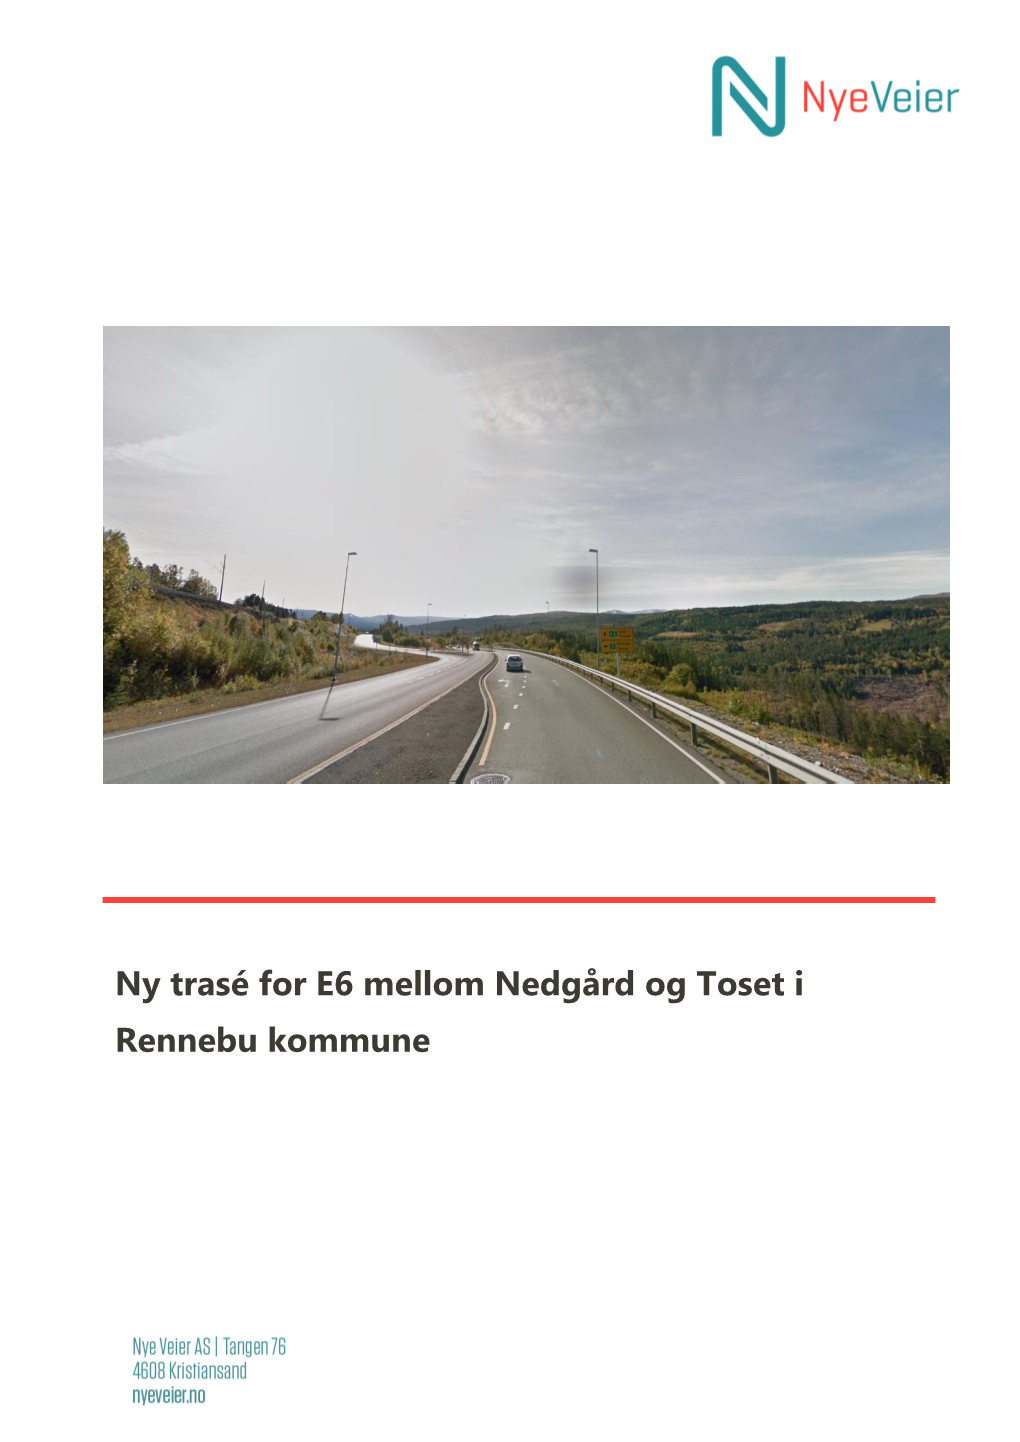 Ny Trasé for E6 Mellom Nedgård Og Toset I Rennebu Kommune